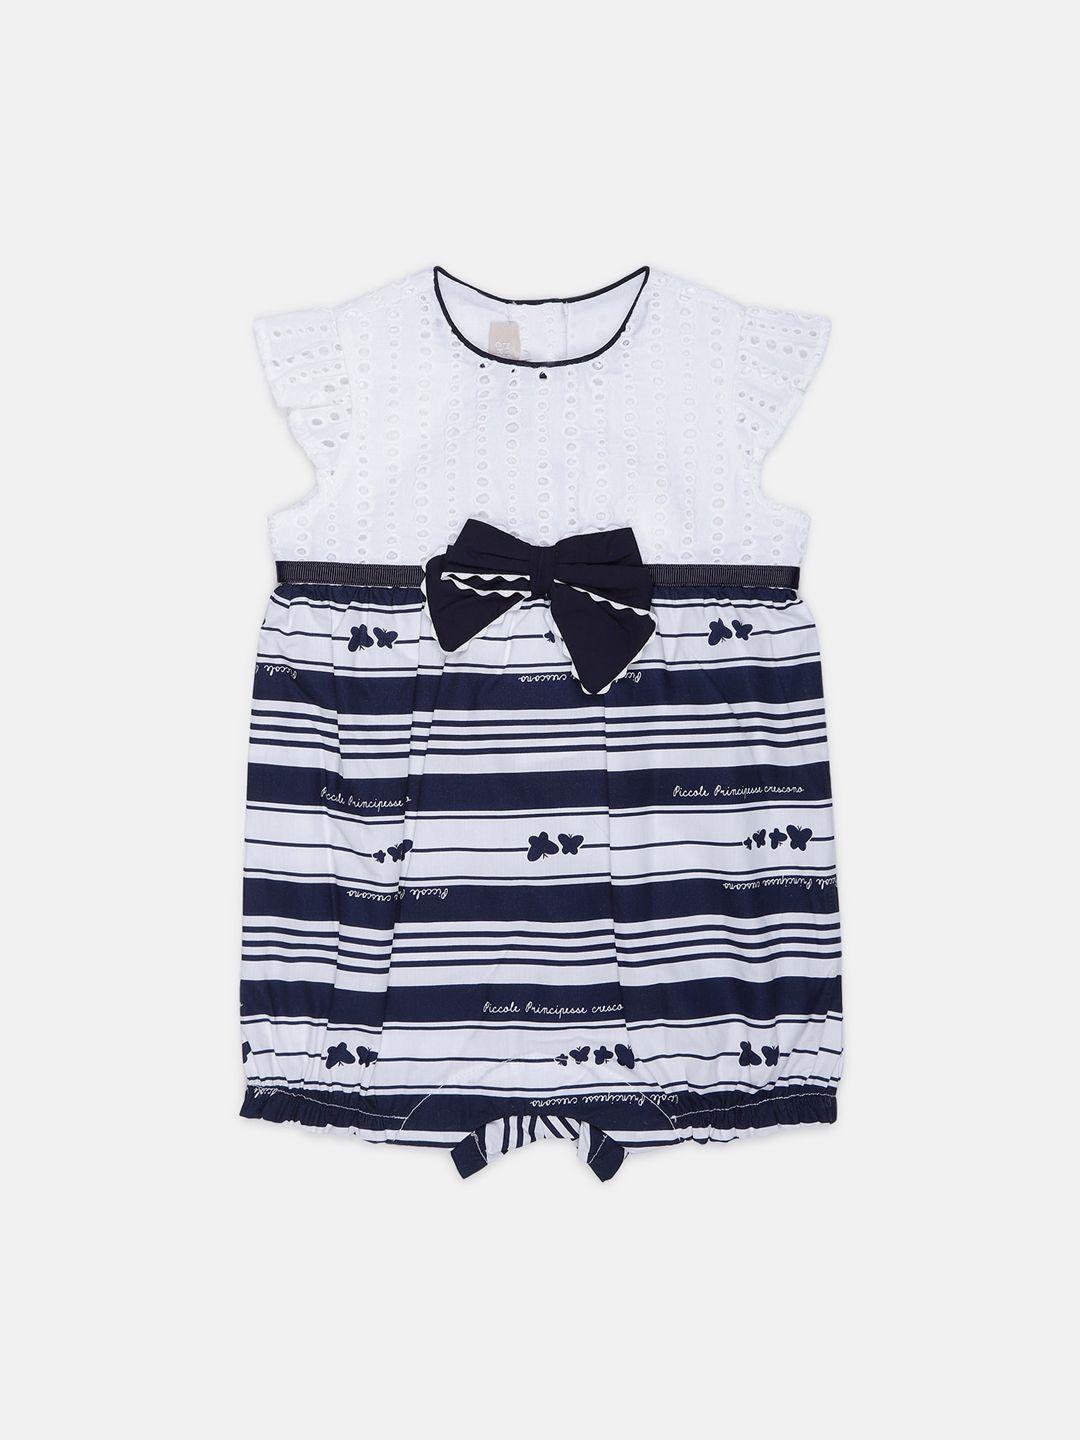 Chicco Infant Girls Navy Blue & White Striped Romper